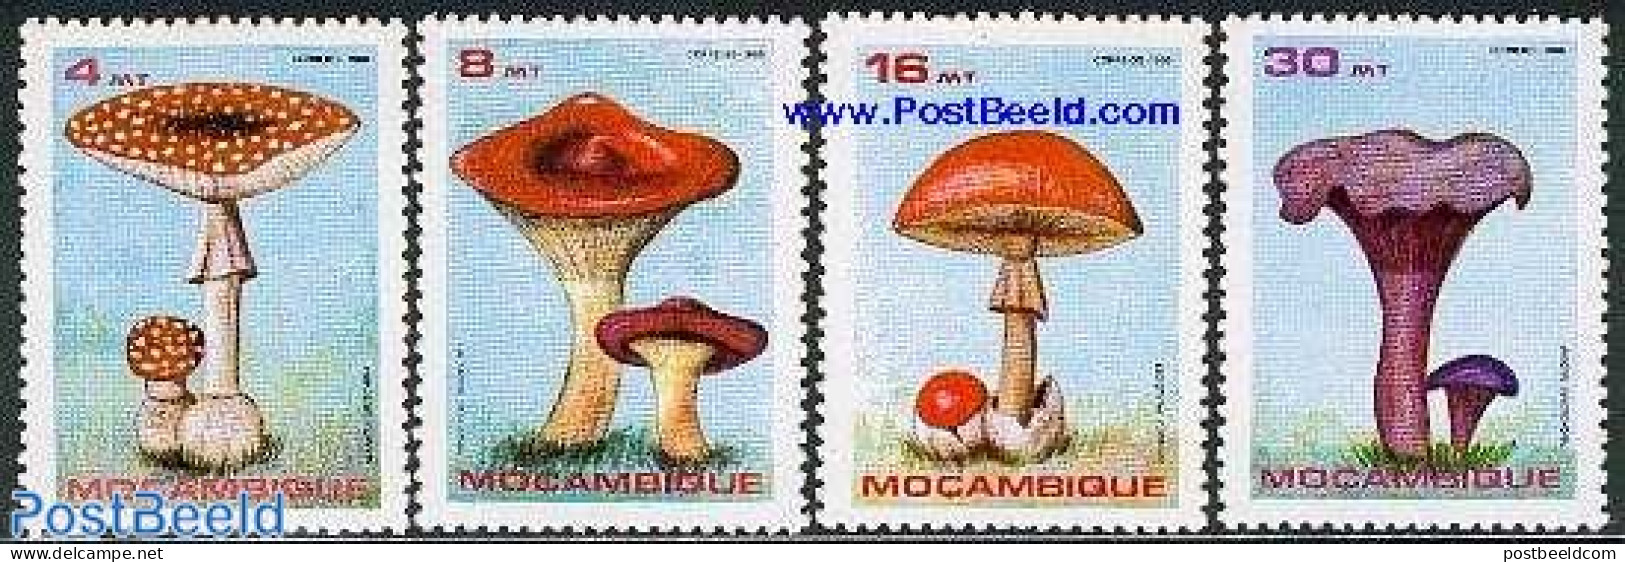 Mozambique 1986 Mushrooms 4v, Mint NH, Nature - Mushrooms - Pilze